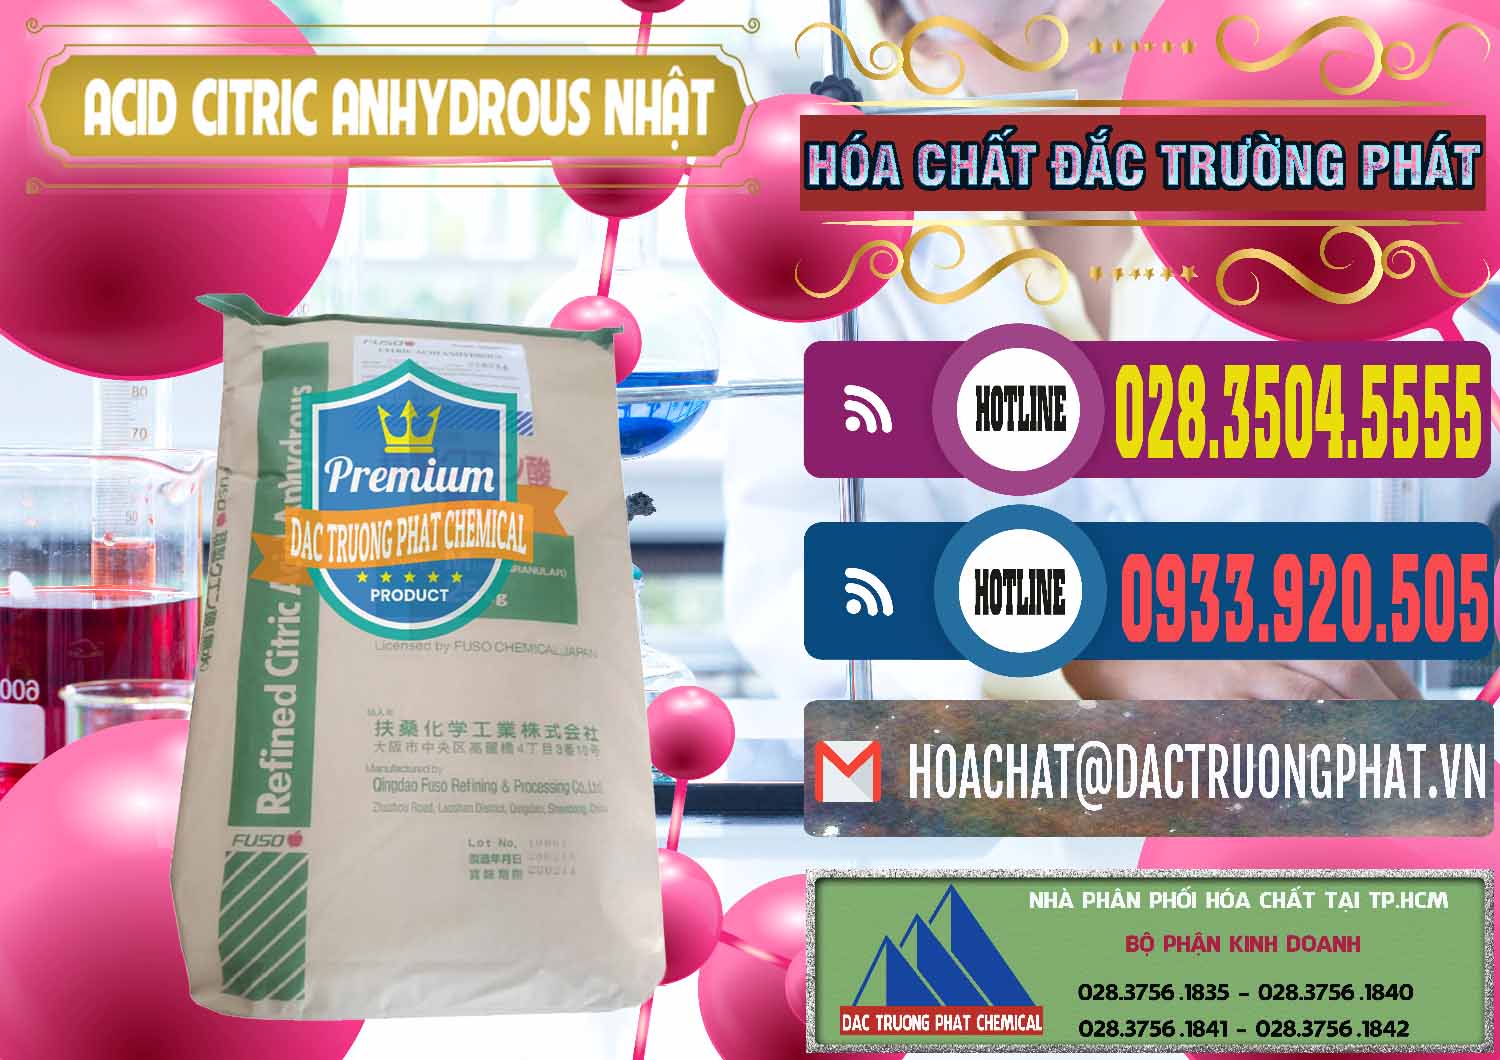 Bán - cung cấp Acid Citric - Axit Citric Anhydrous FUSO Nhật Japan - 0439 - Cty chuyên cung cấp và bán hóa chất tại TP.HCM - muabanhoachat.com.vn